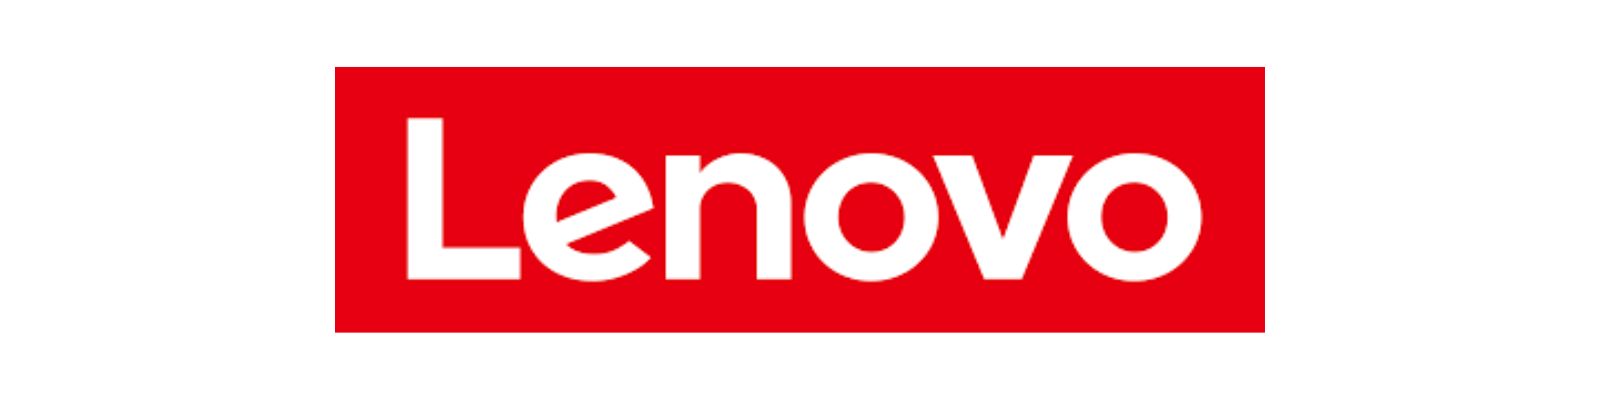 WhatsApp Lenovo: Conheça todos os canais disponíveis!